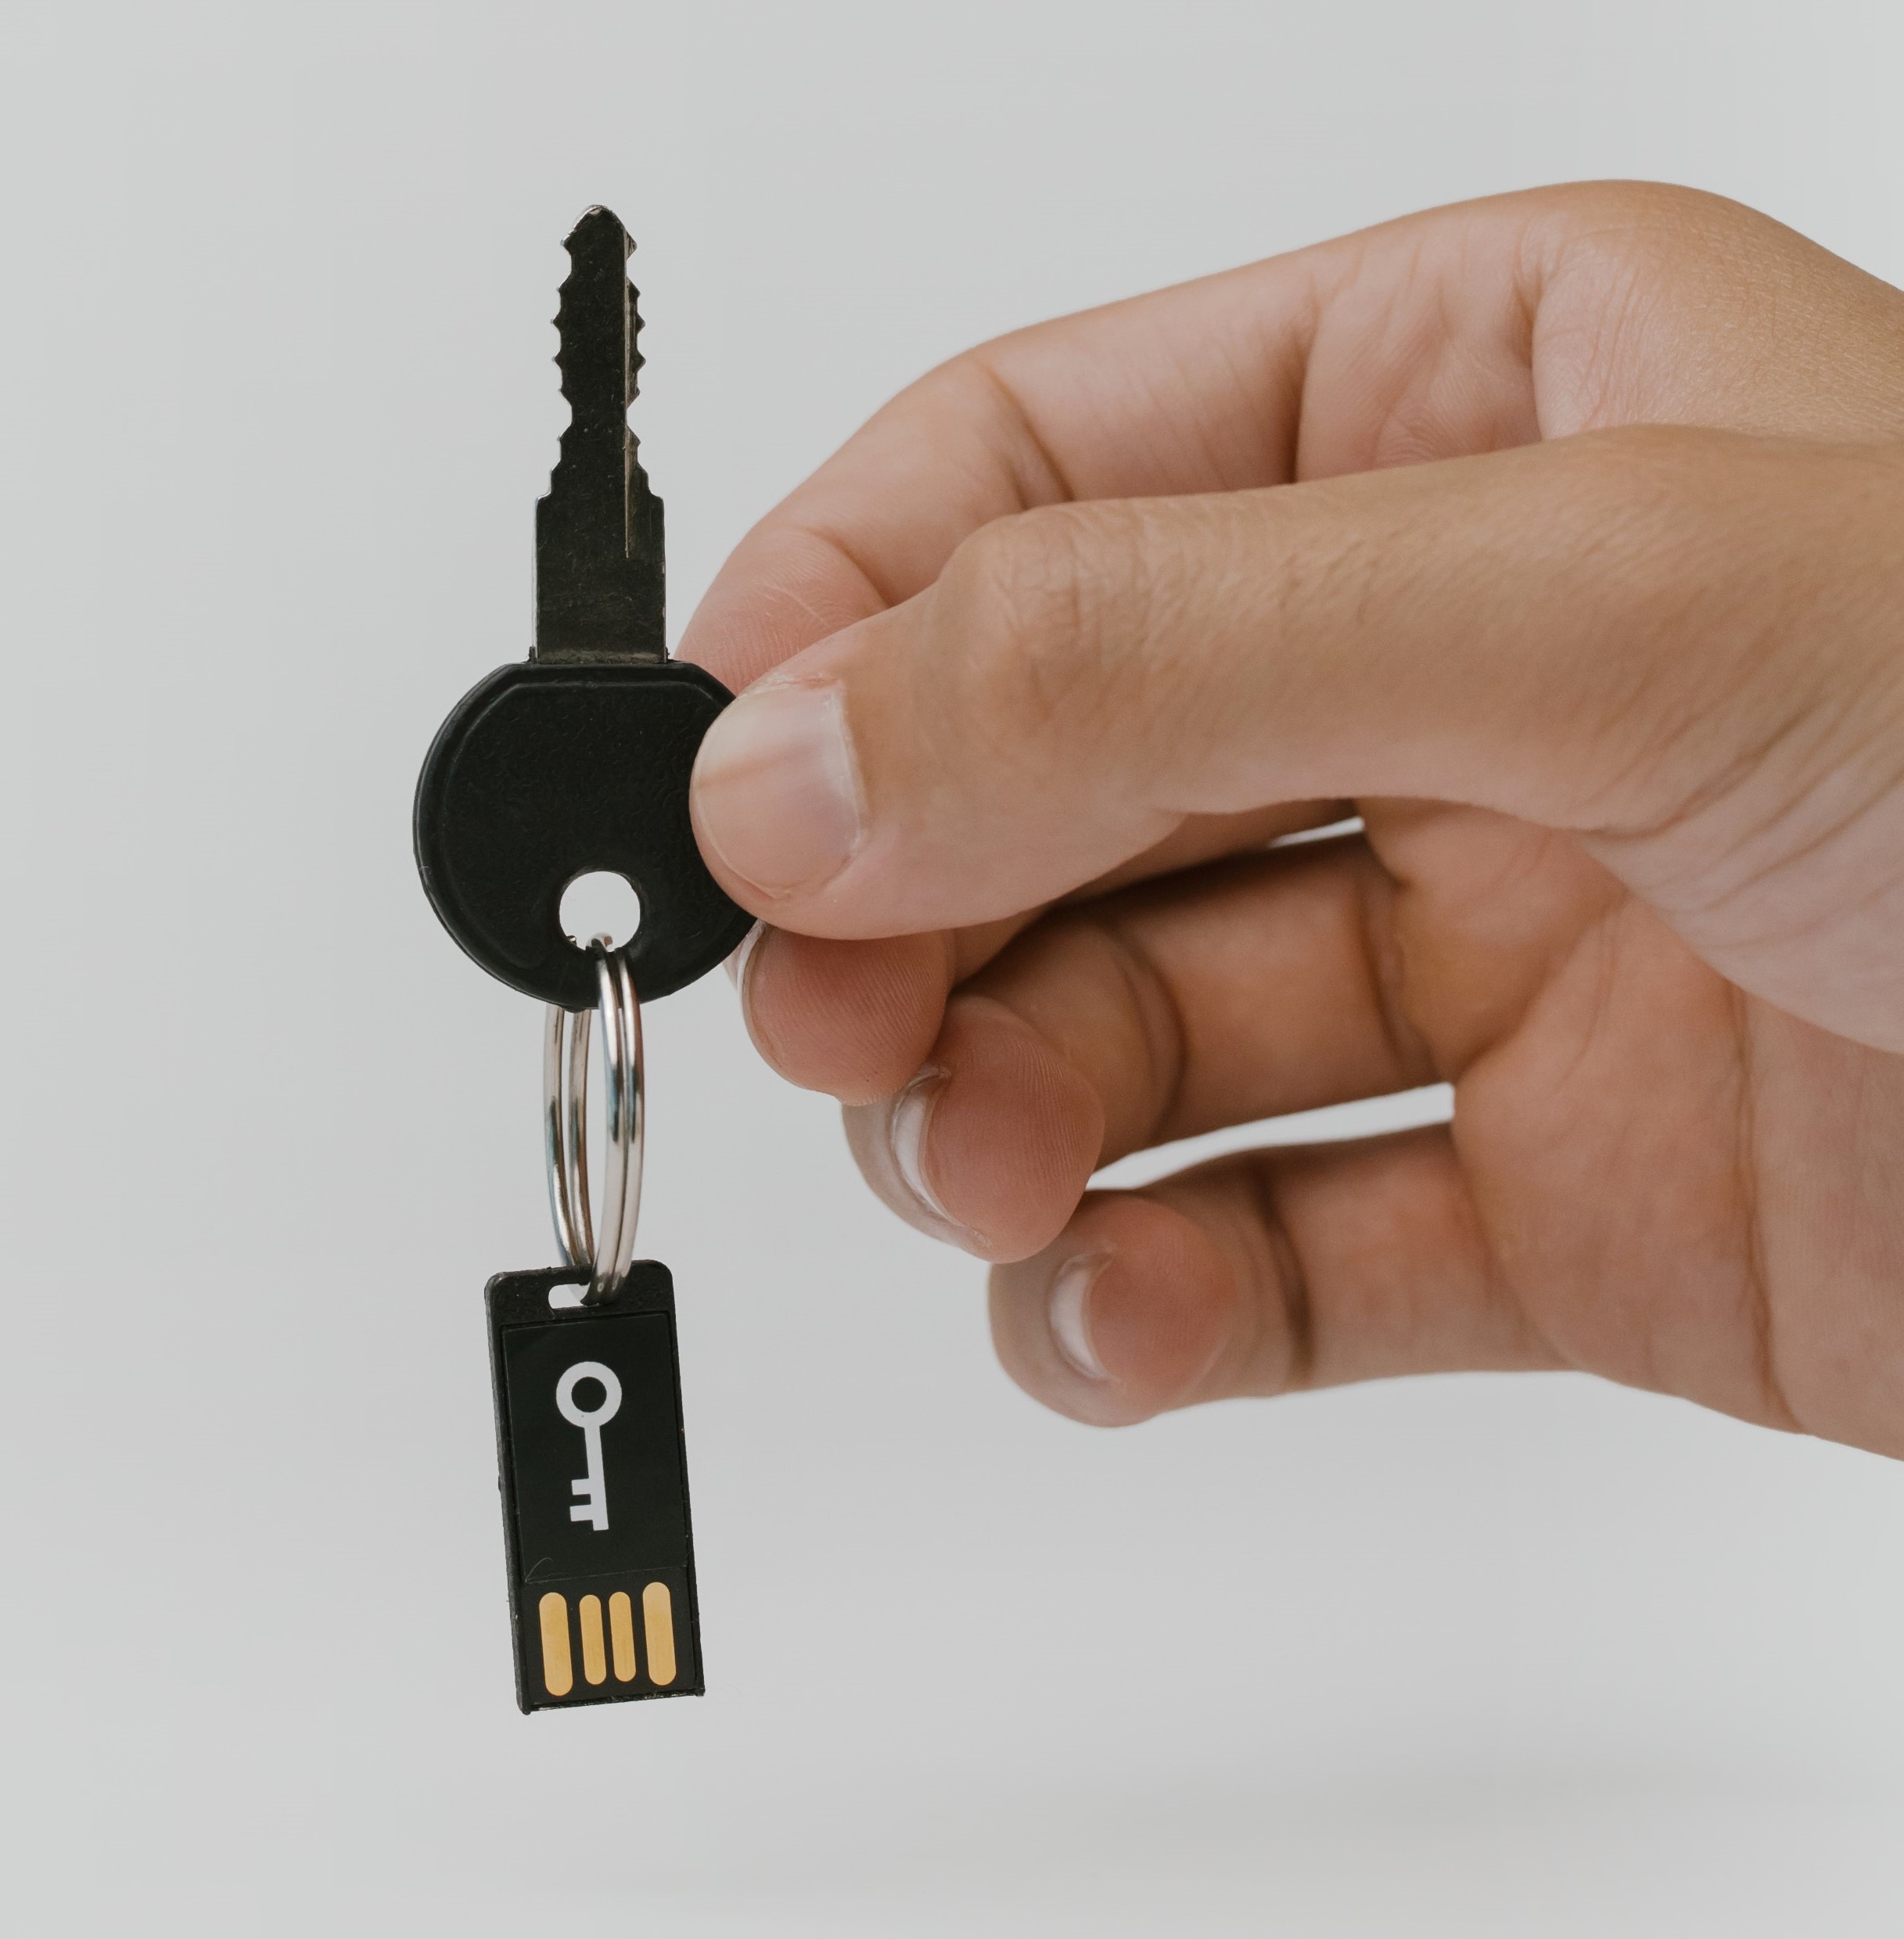 ხელი, რომელსაც უჭირავს რეალური გასაღები გასაღების რგოლით, რომელიც მიმაგრებულია 2 f a მოწყობილობაზე